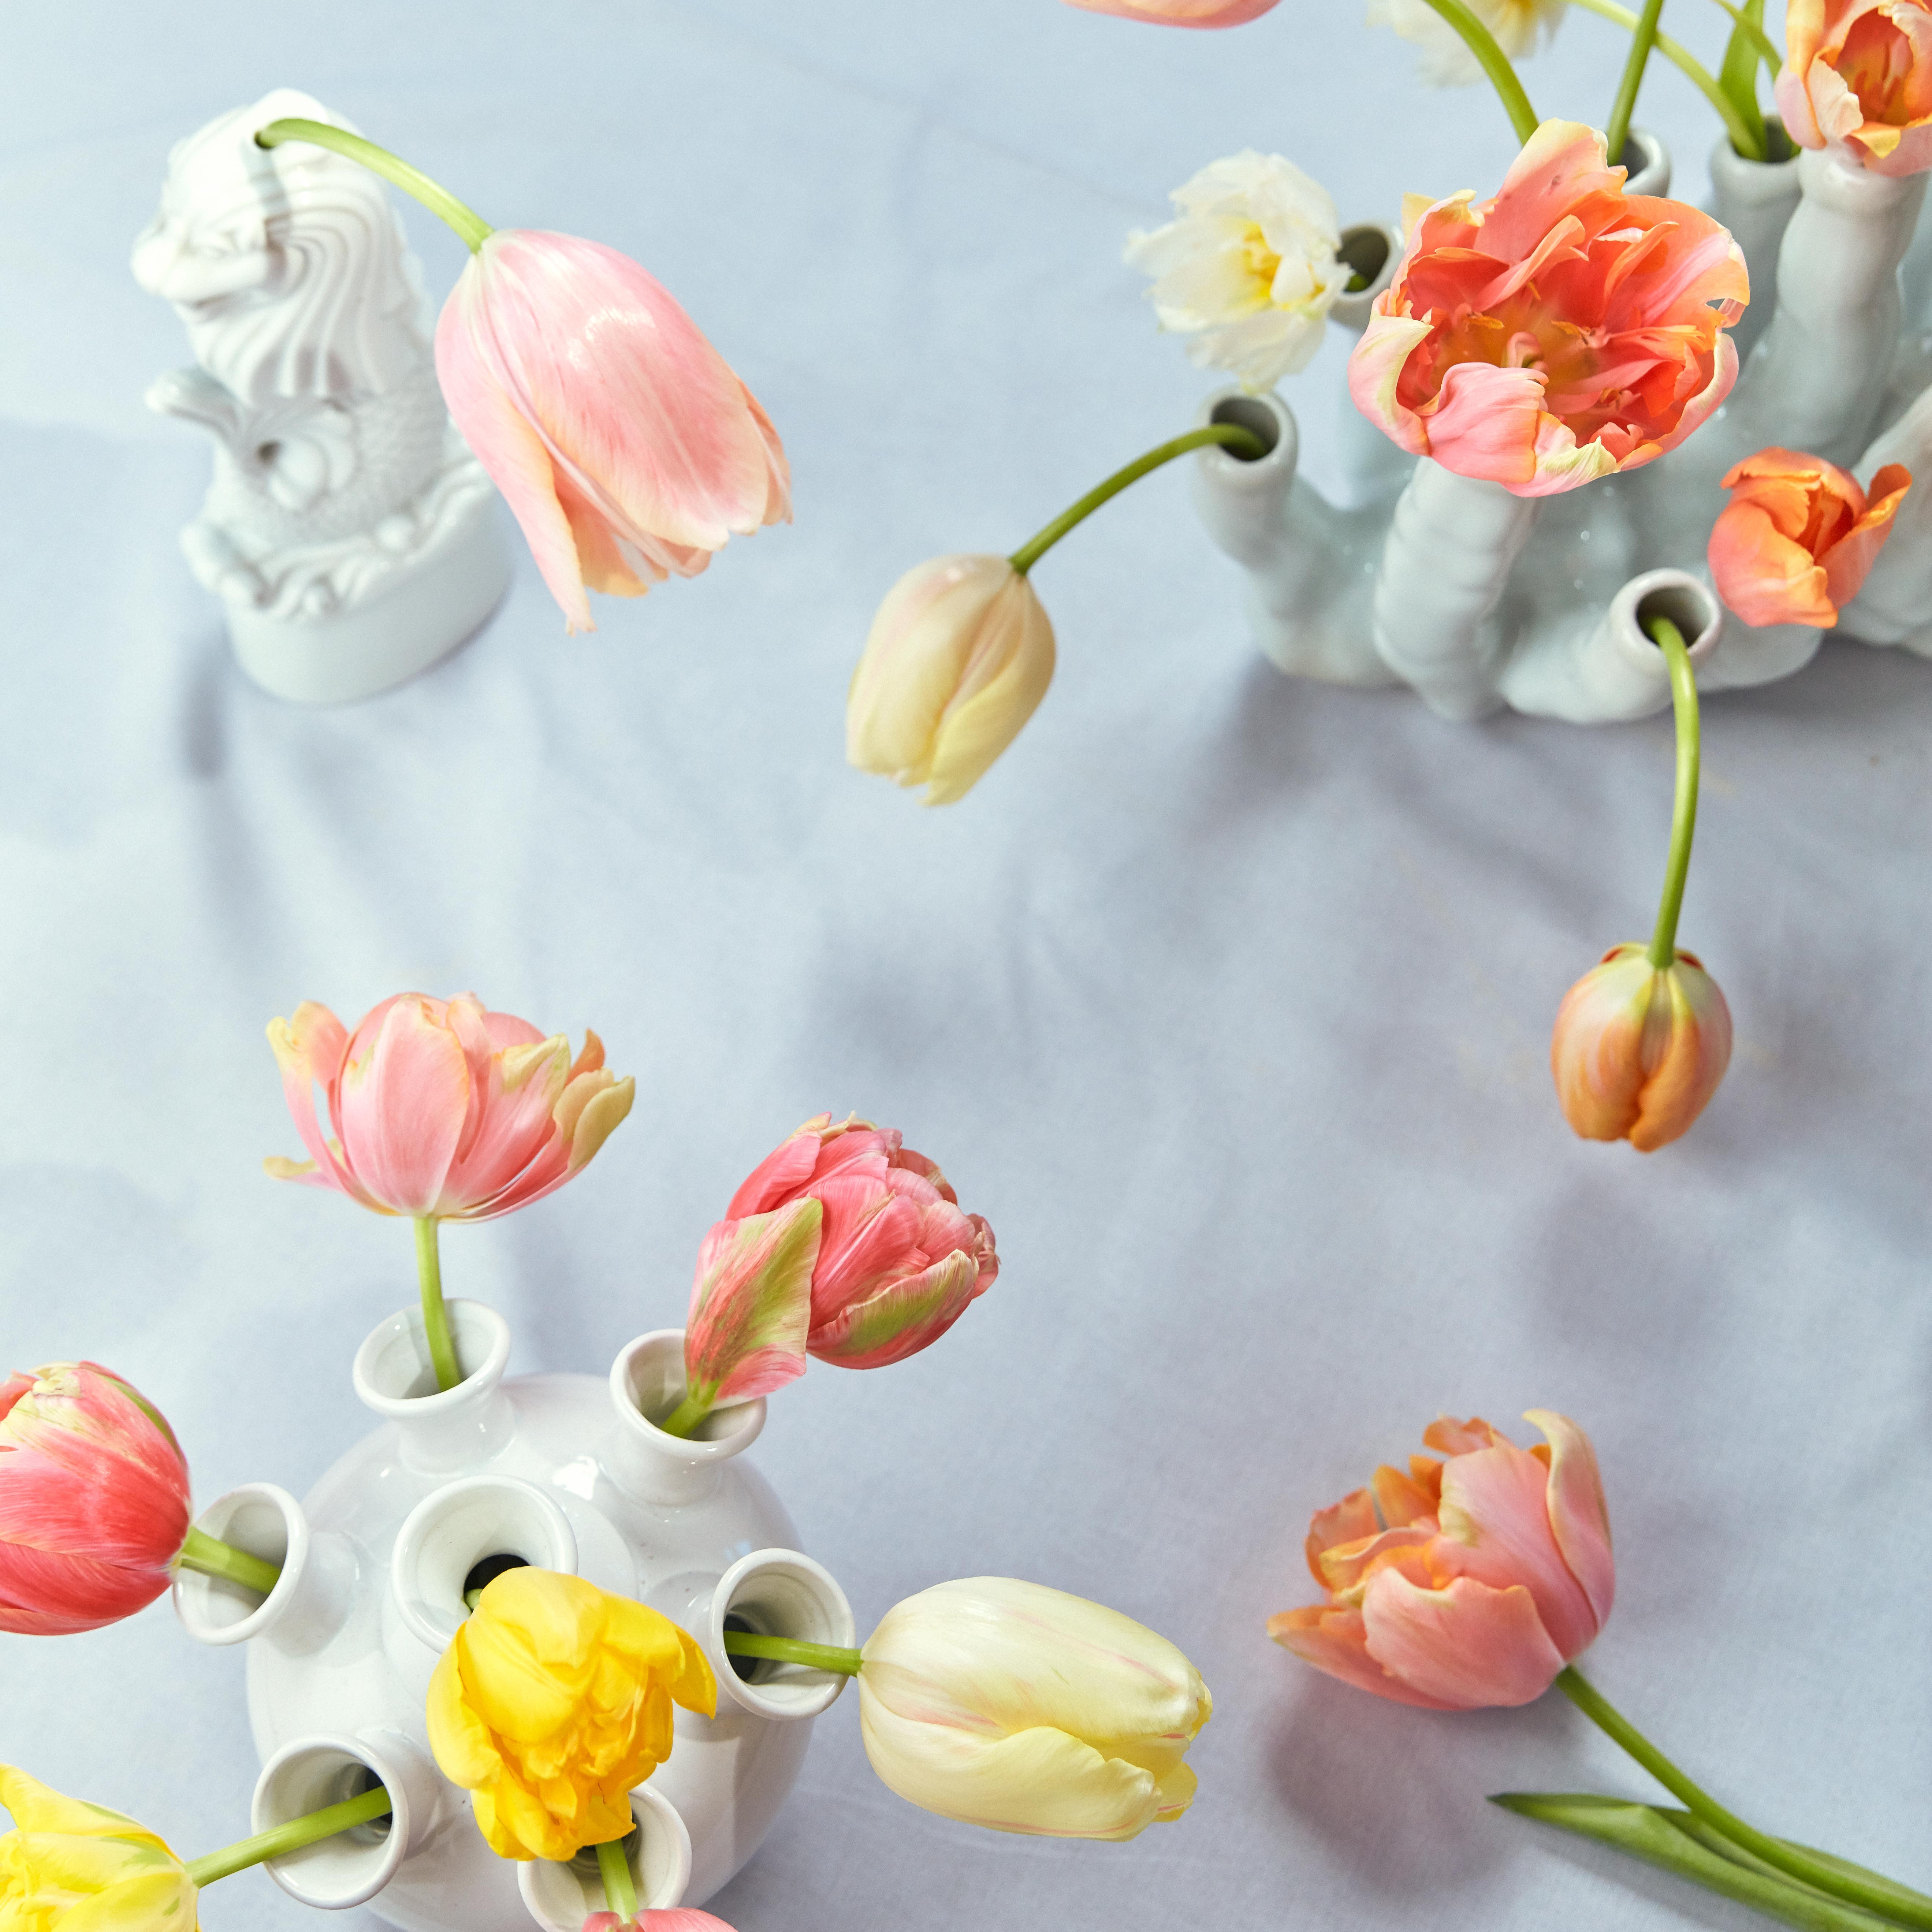 Les tulipes aux multiples couleurs et aux formes variées ©Photo lajoiedesfleurs.fr